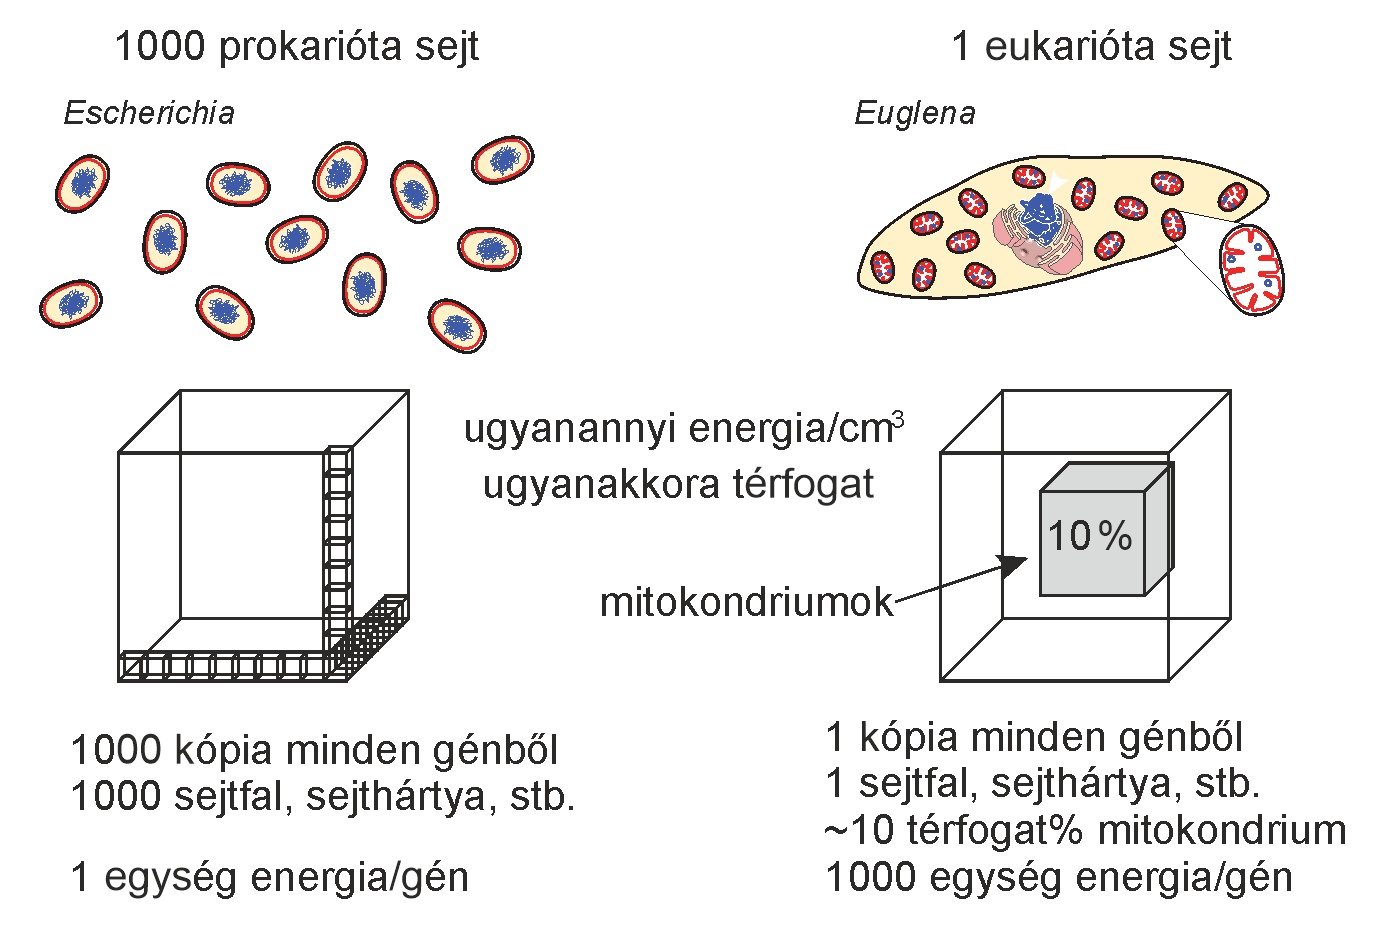 A prokarióták és eukarióták közötti felépítésbeli és energetikai különbség. Ugyanakkora térfogatban ugyanannyi energiát tud megtermelni egyetlen eukarióta sejt, mint sok prokarióta. A különbség egyrészt a nem-energiatermelésre fordított térfogatokban (az eukarióta sejt 90 százaléka felhasználható másra), valamint a membránok szerepében van (az eukarióta membrán mentesül az energiatermelési szükségletek alól). Továbbá az eukarióta sejt könnyen tudja növelni a méretével az energiatermelési kapacitását, amire a prokarióta sejt egy ponton túl nem képes. Eredeti forrás: (Lane and Martin 2010, Martin 2017) .